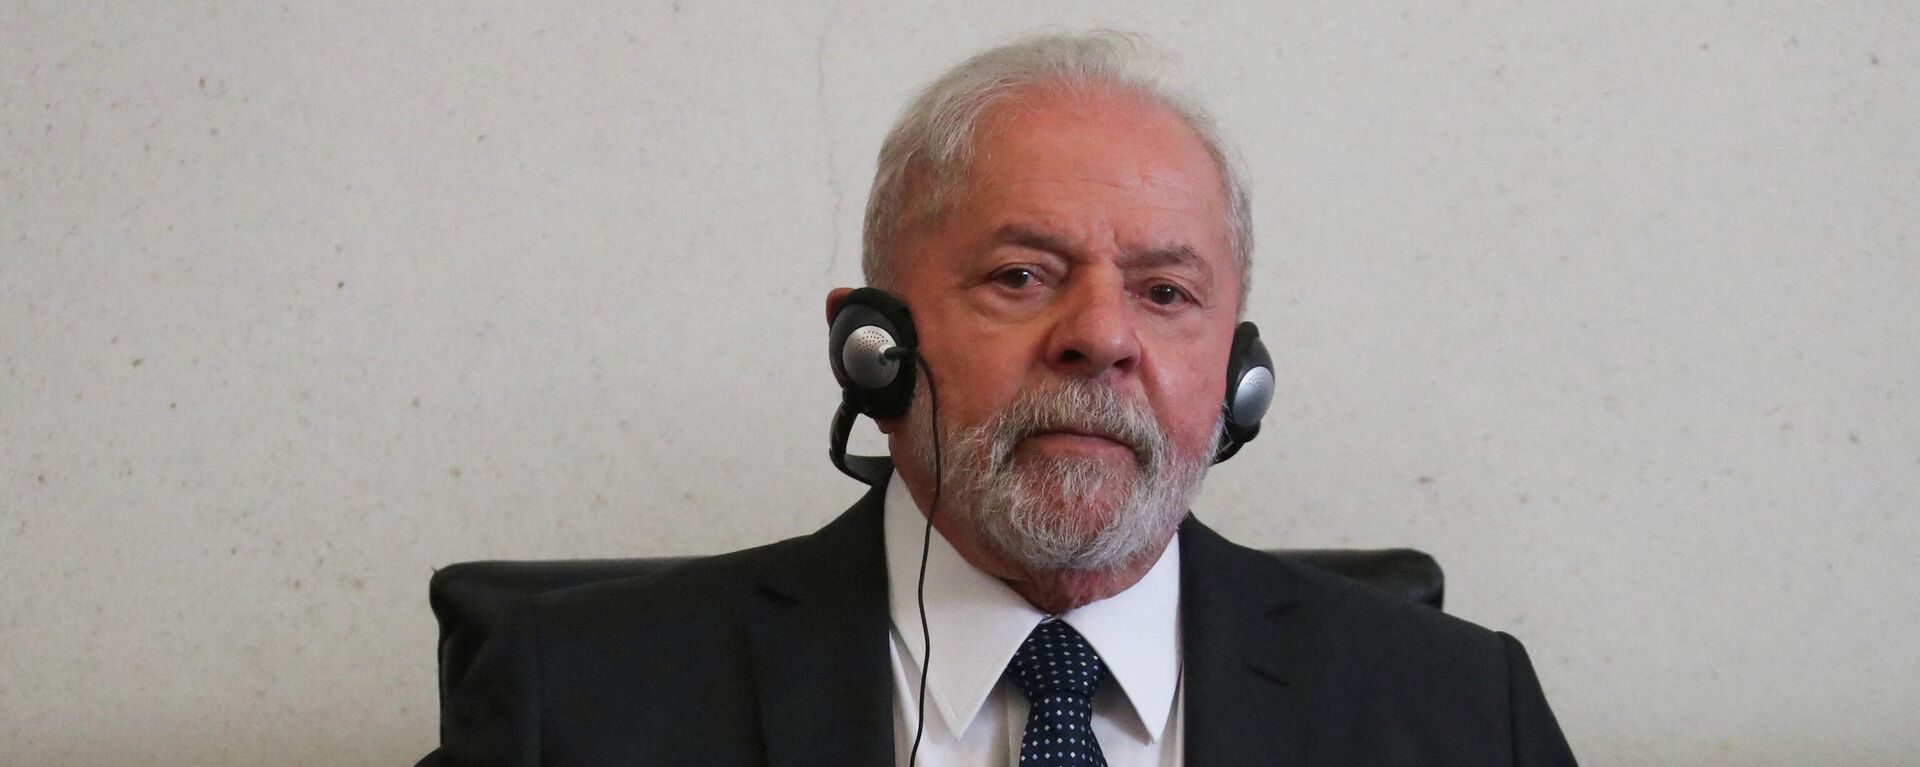 O ex-presidente brasileiro Luiz Inácio Lula da Silva gesticula durante uma reunião com senadores no prédio do Senado do México, na Cidade do México, México, 3 de março de 2022 - Sputnik Brasil, 1920, 08.03.2022